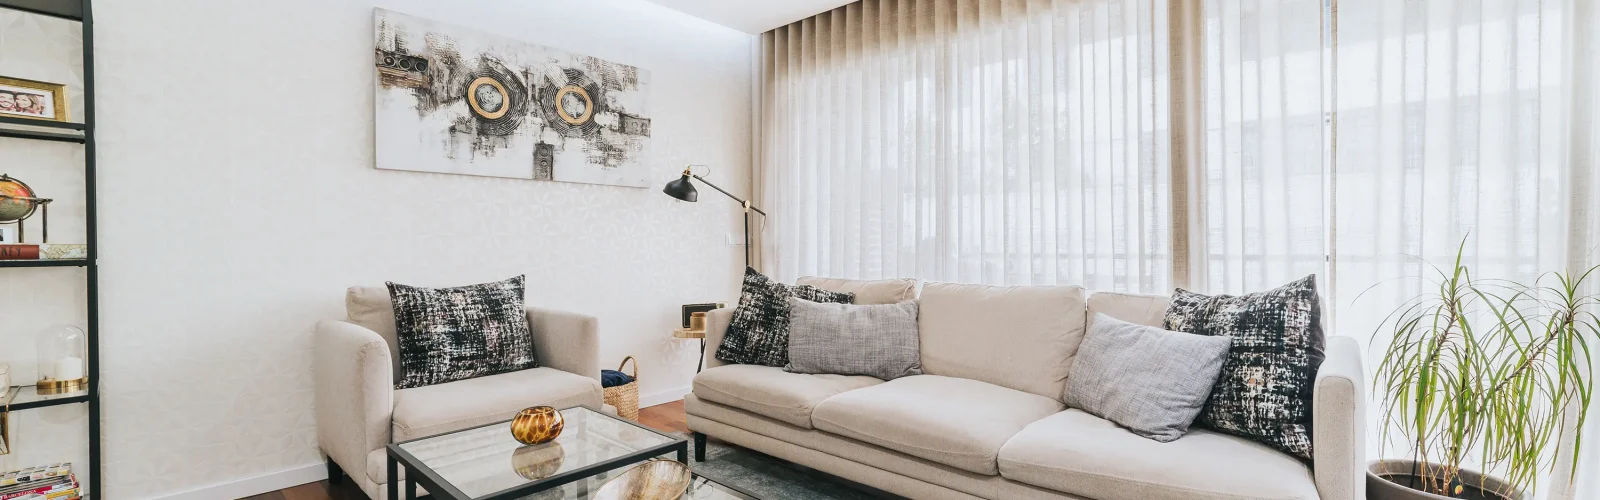 Sala de estar ampla, com cores vibrantes e radiante de luz planeada por uma designer de interiores